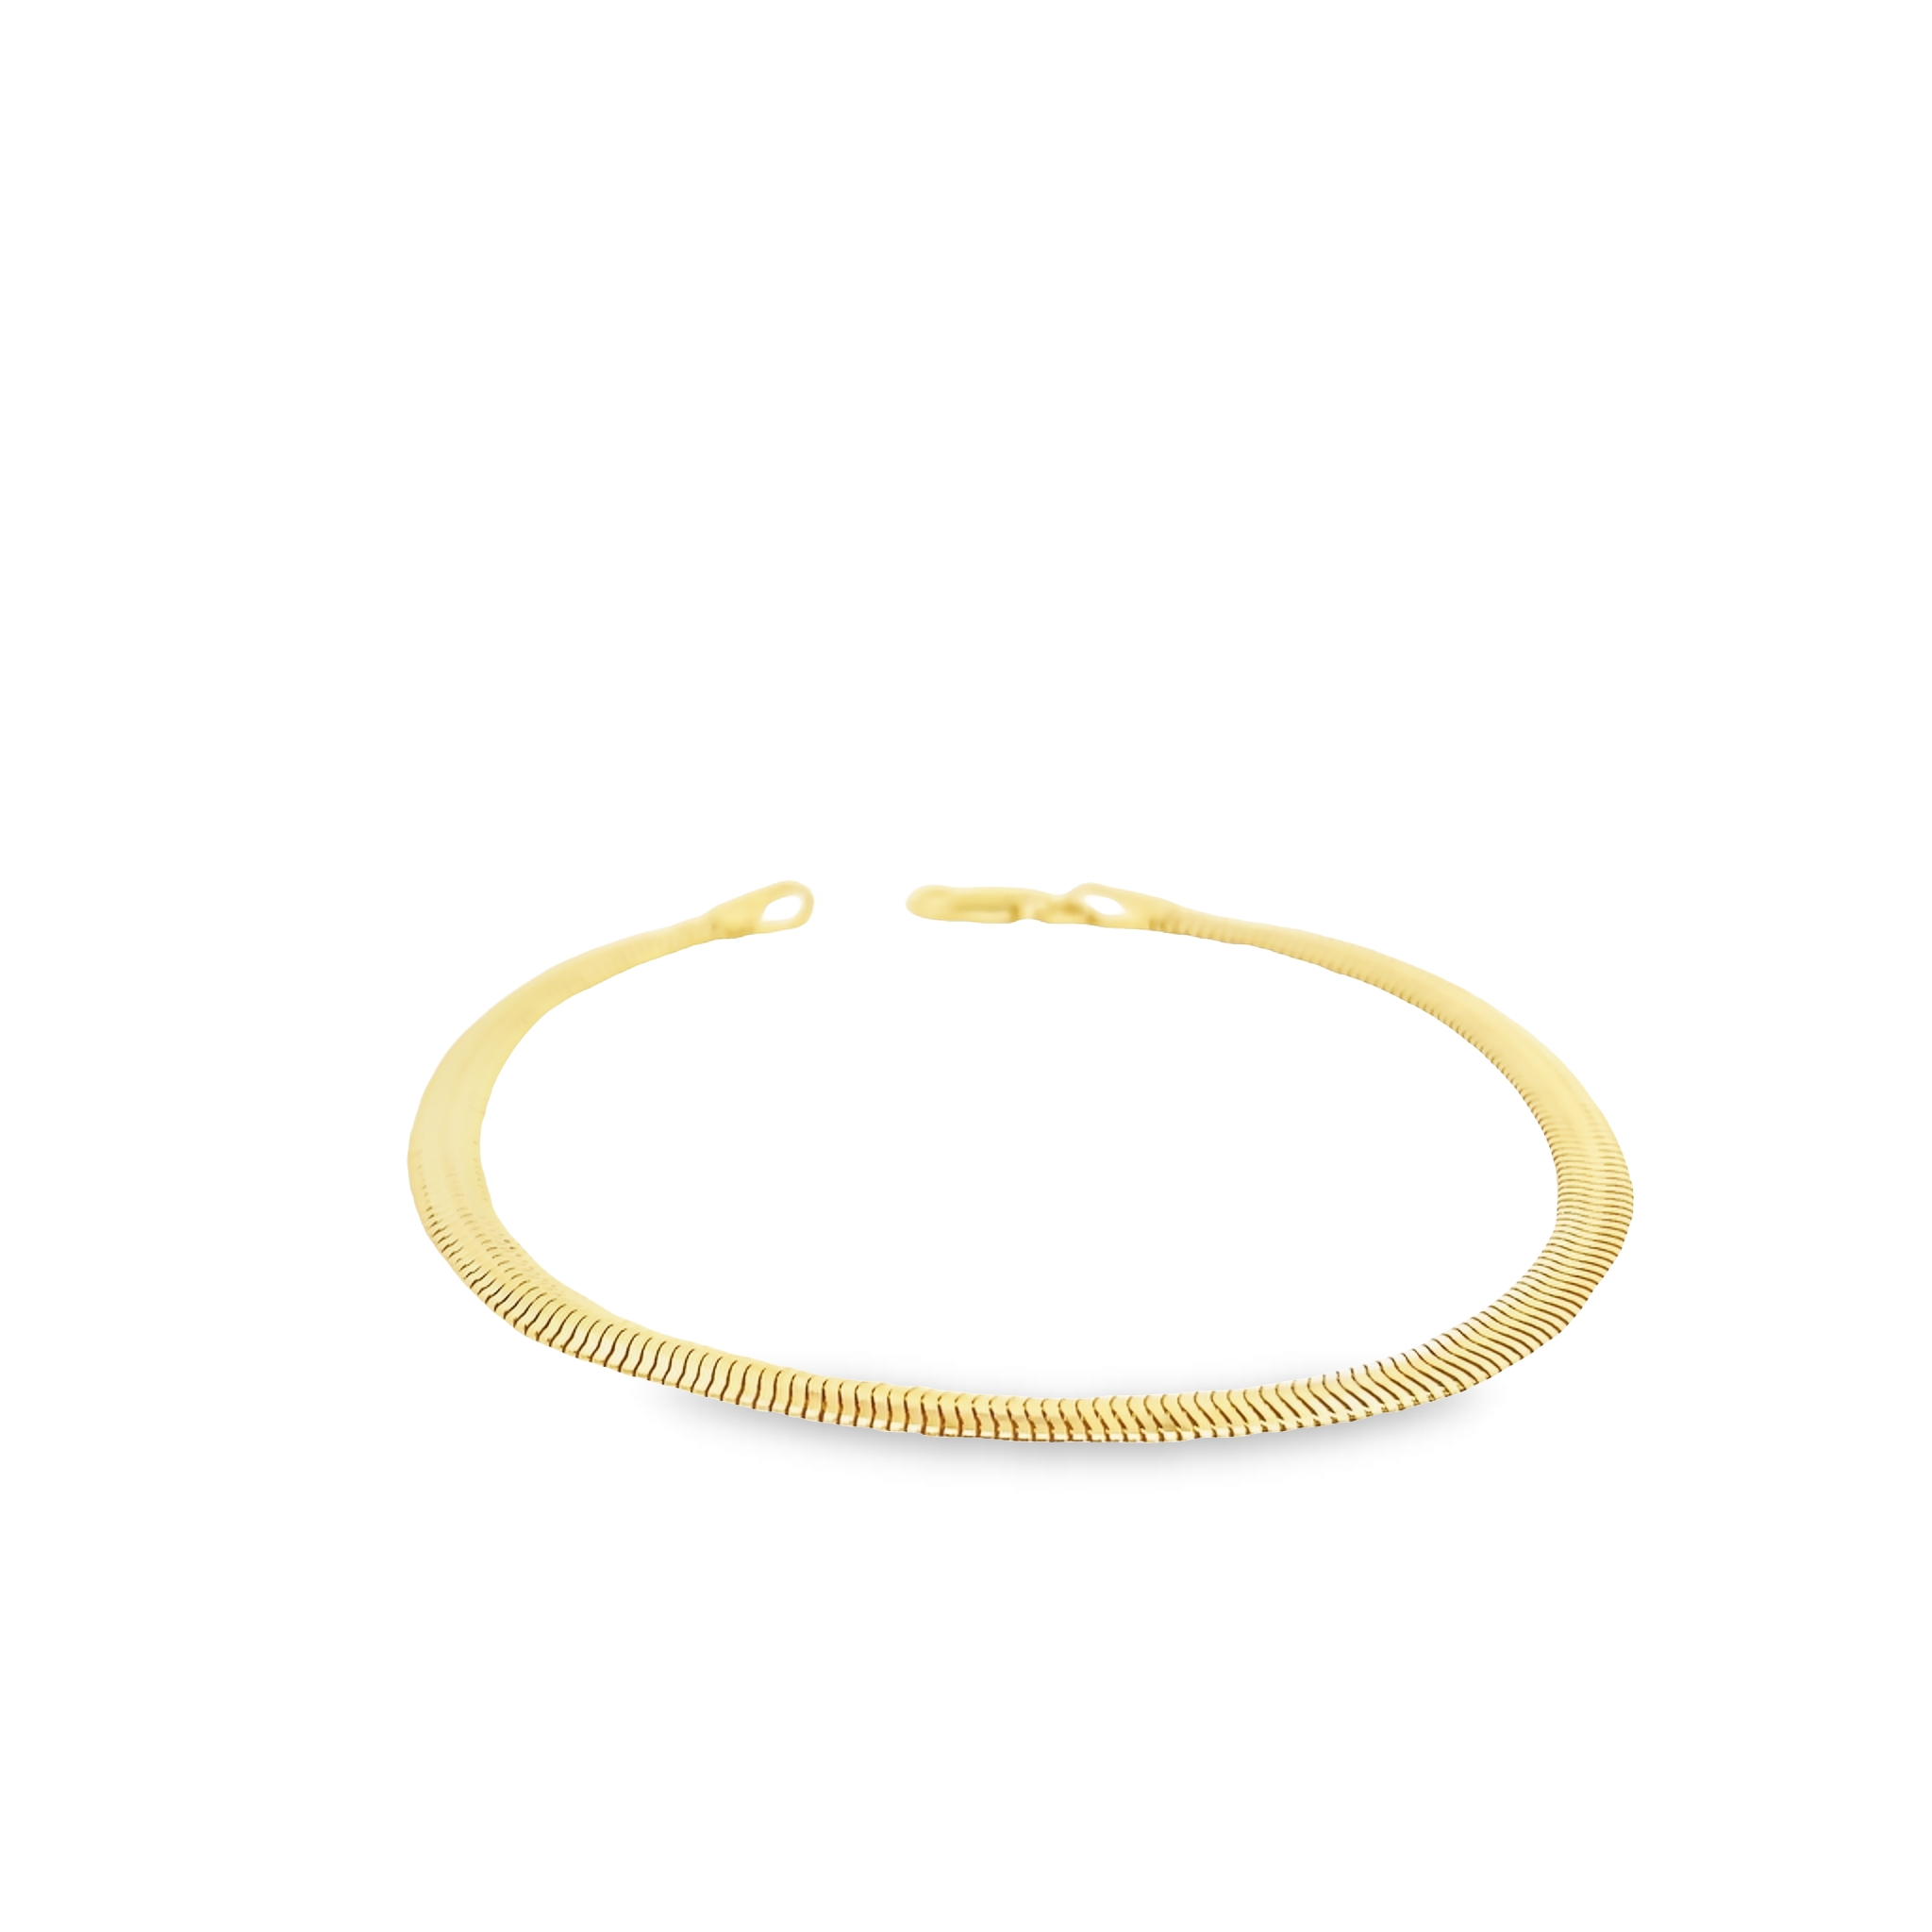 14 karat yellow gold hollow snake bracelet. 7.5"